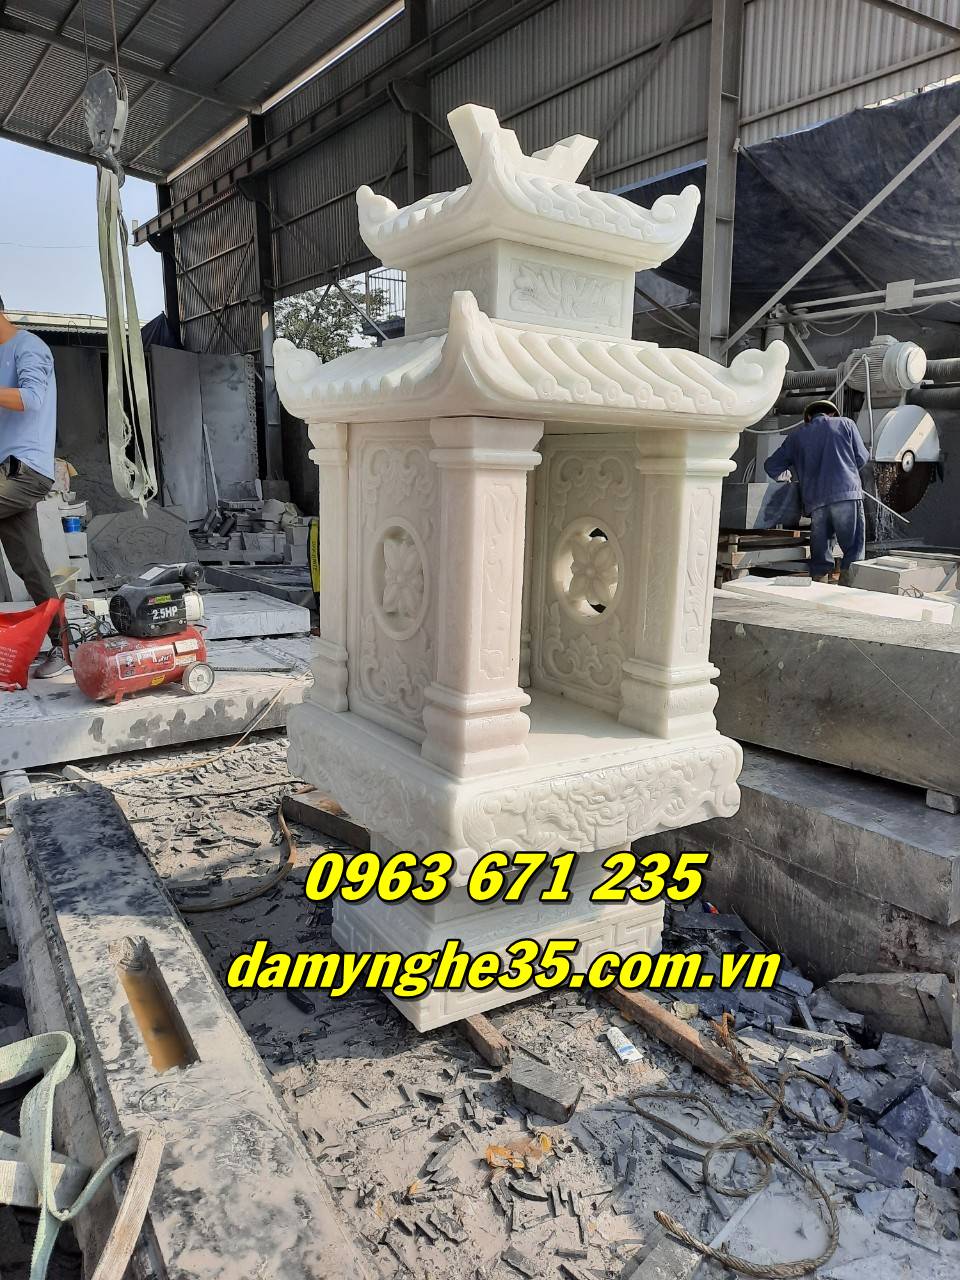 Báo giá mẫu cây hương bằng đá đẹp chuẩn phong thủy bán tại Sài Gòn